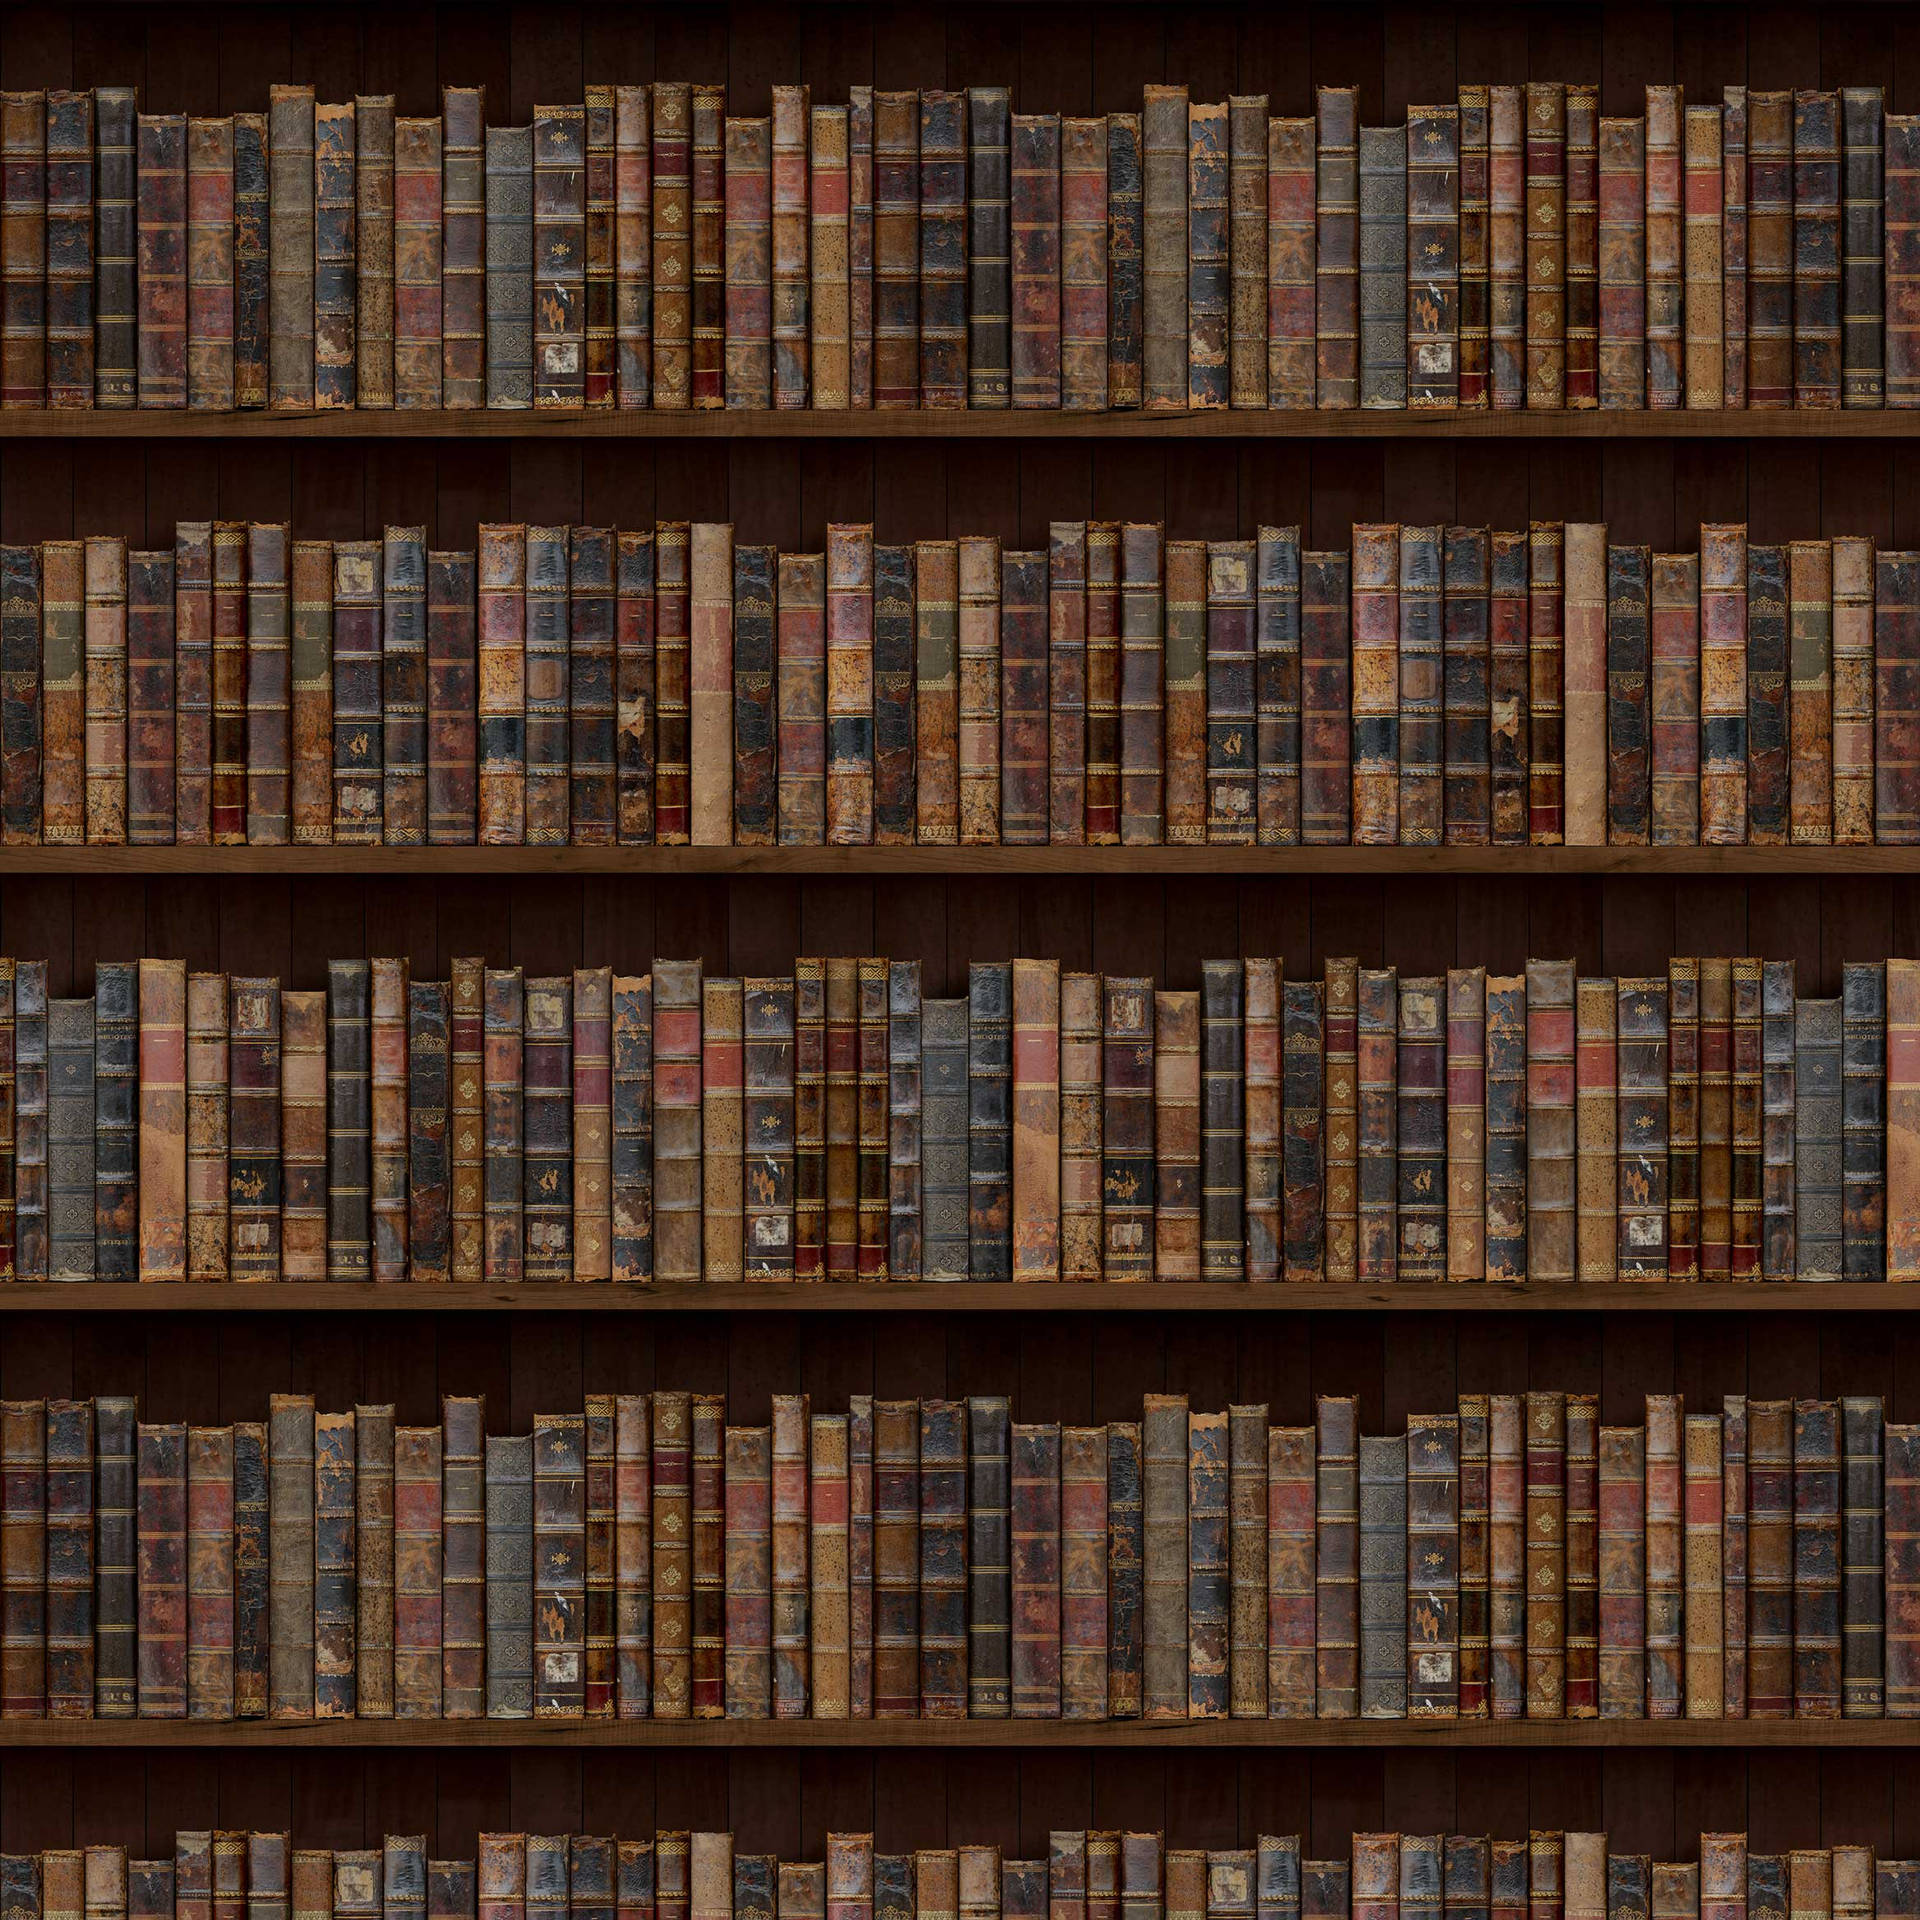 En bibliotek med mange bøger på hylder Wallpaper